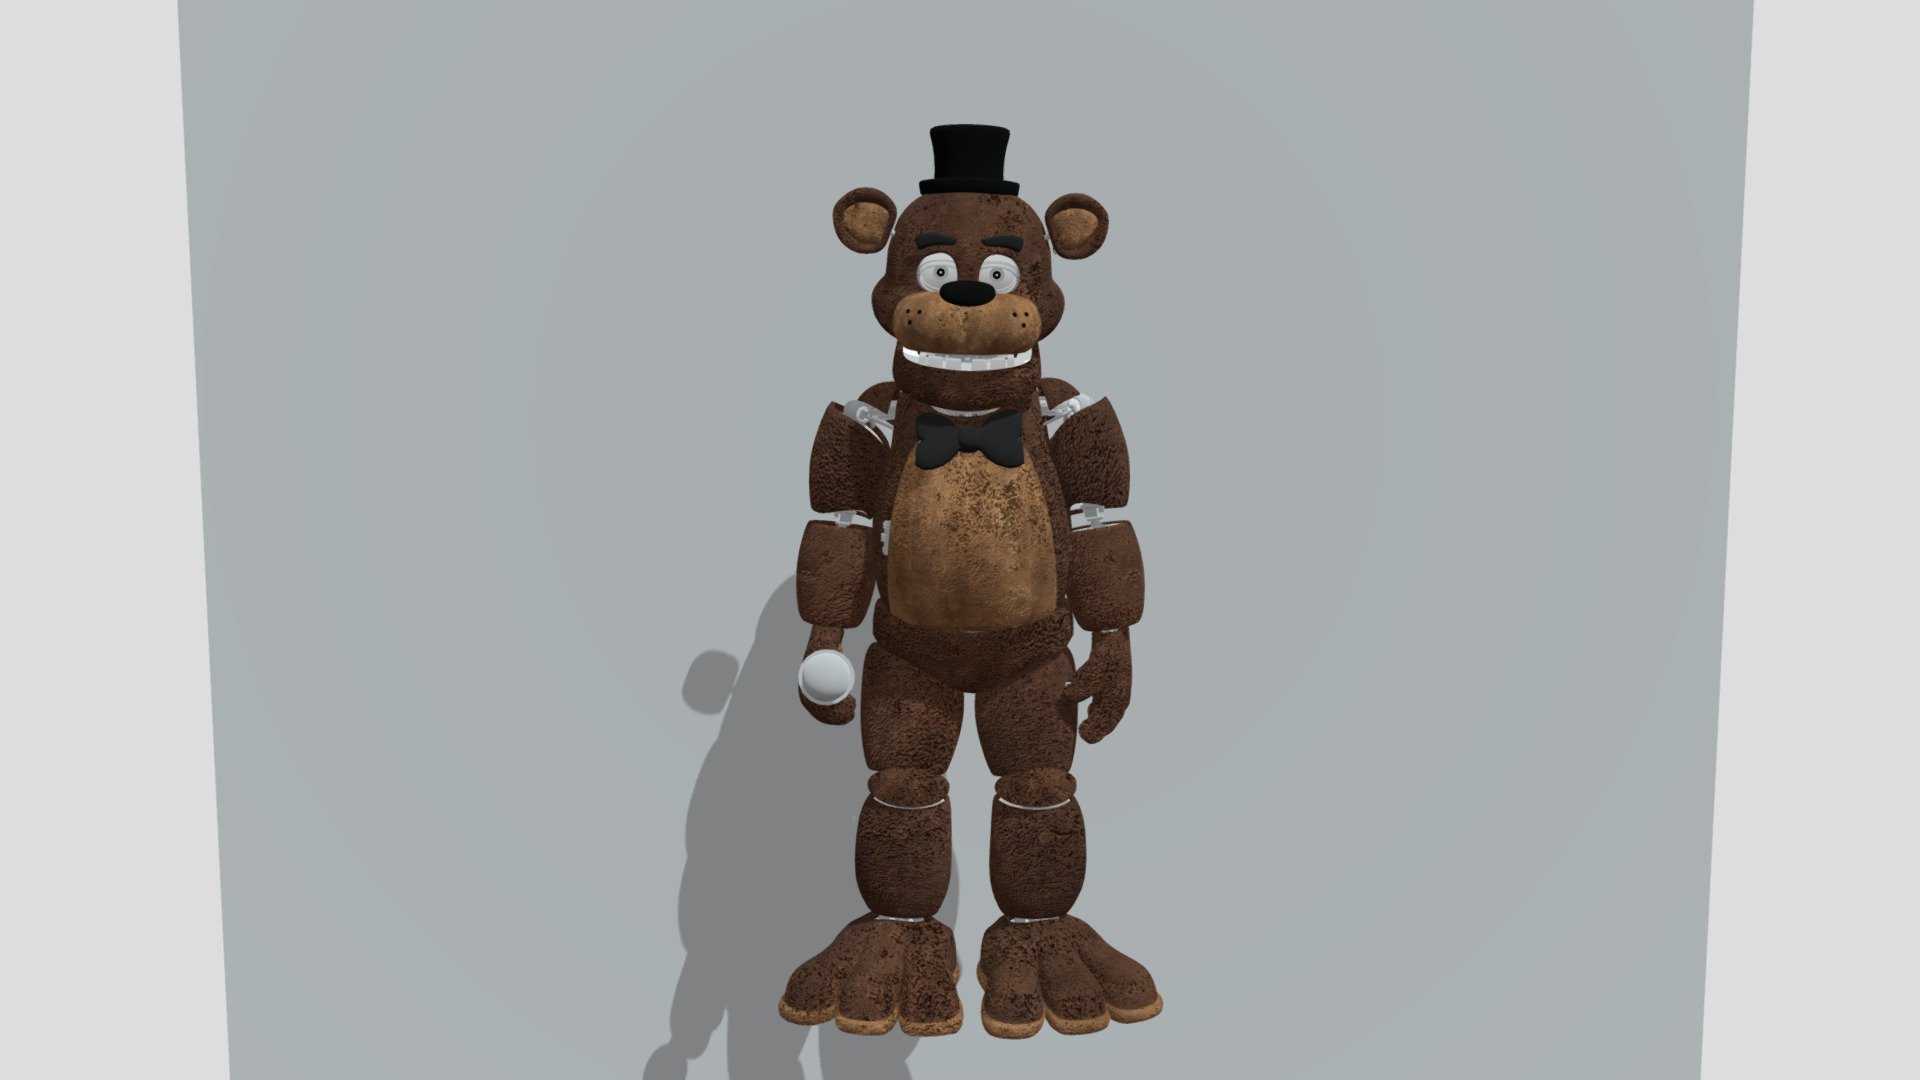 Freddy 3D models - Sketchfab